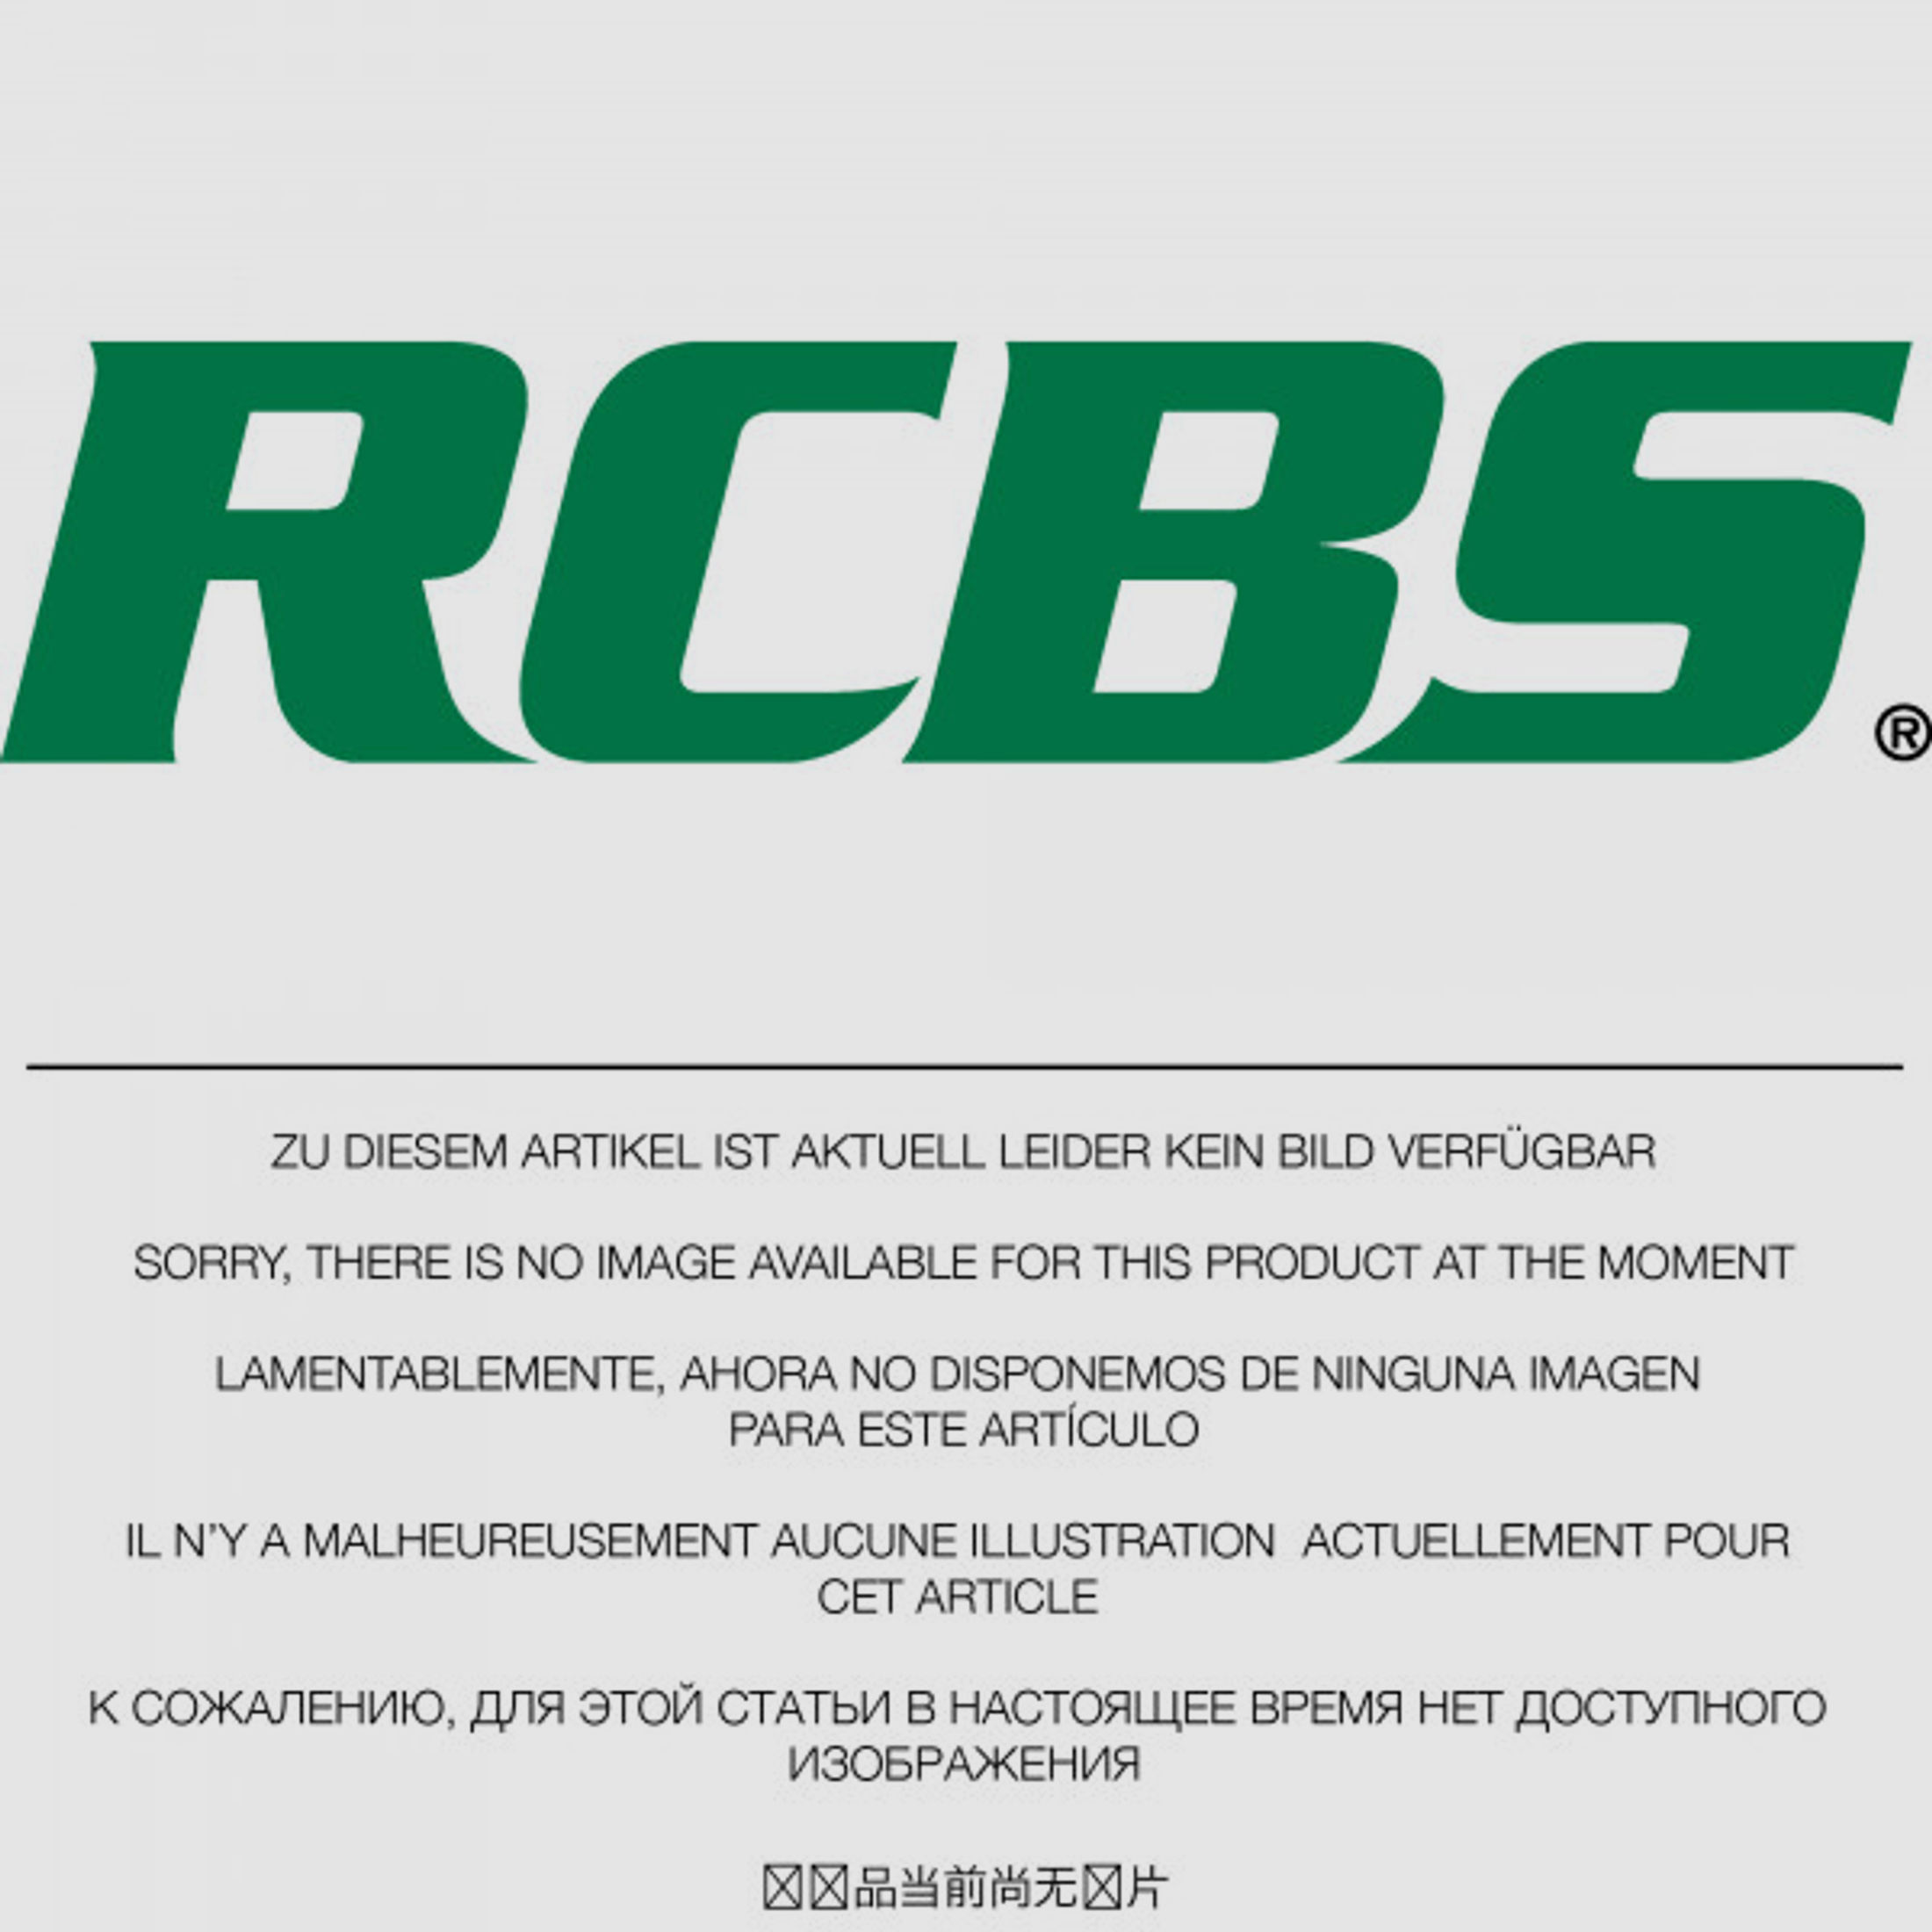 RCBS Lube-A-Matic Top Punch Geschoss Setzstempel Nr. 600 #85600